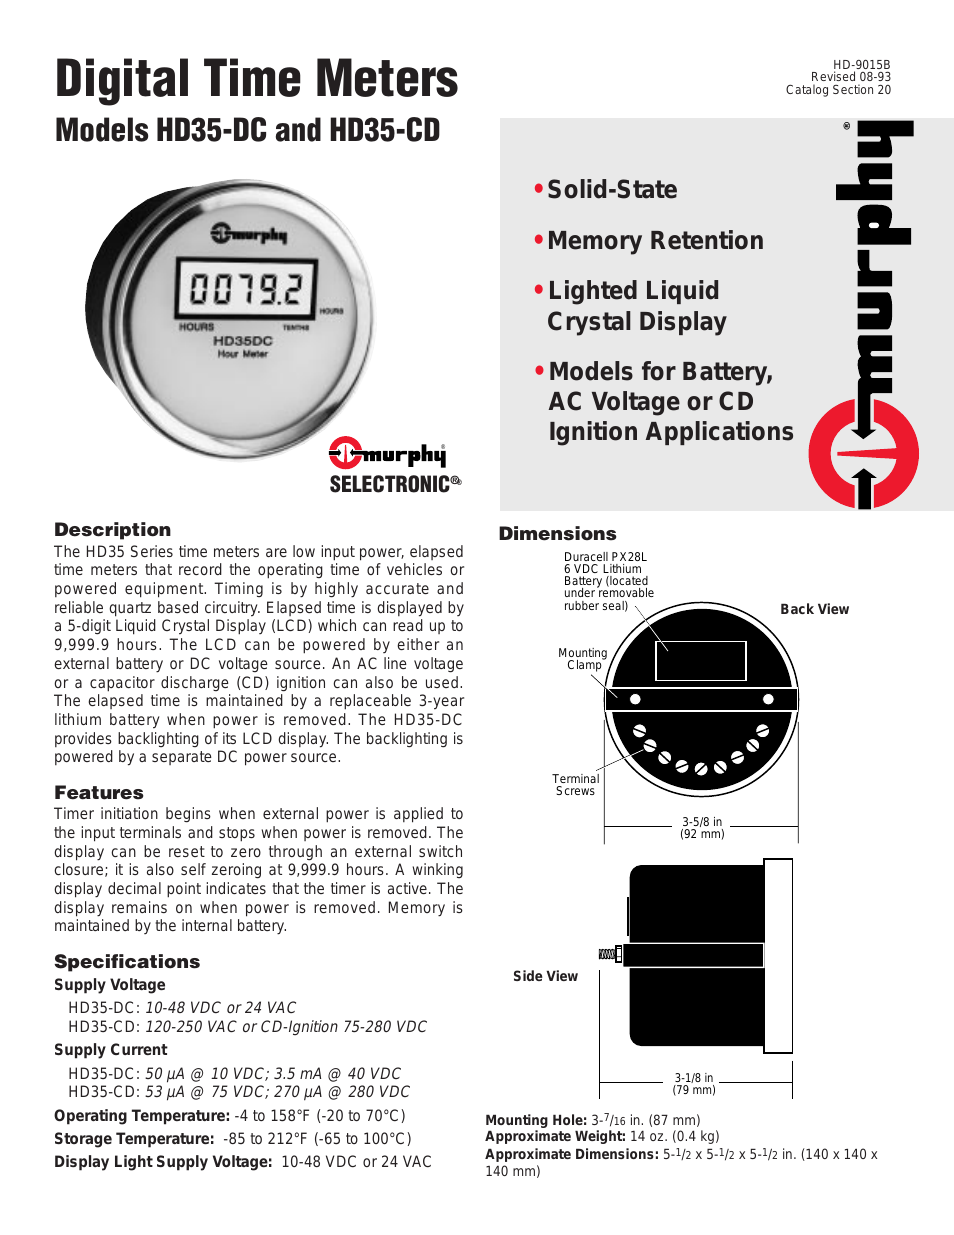 Digital Time Meters HD35-DC